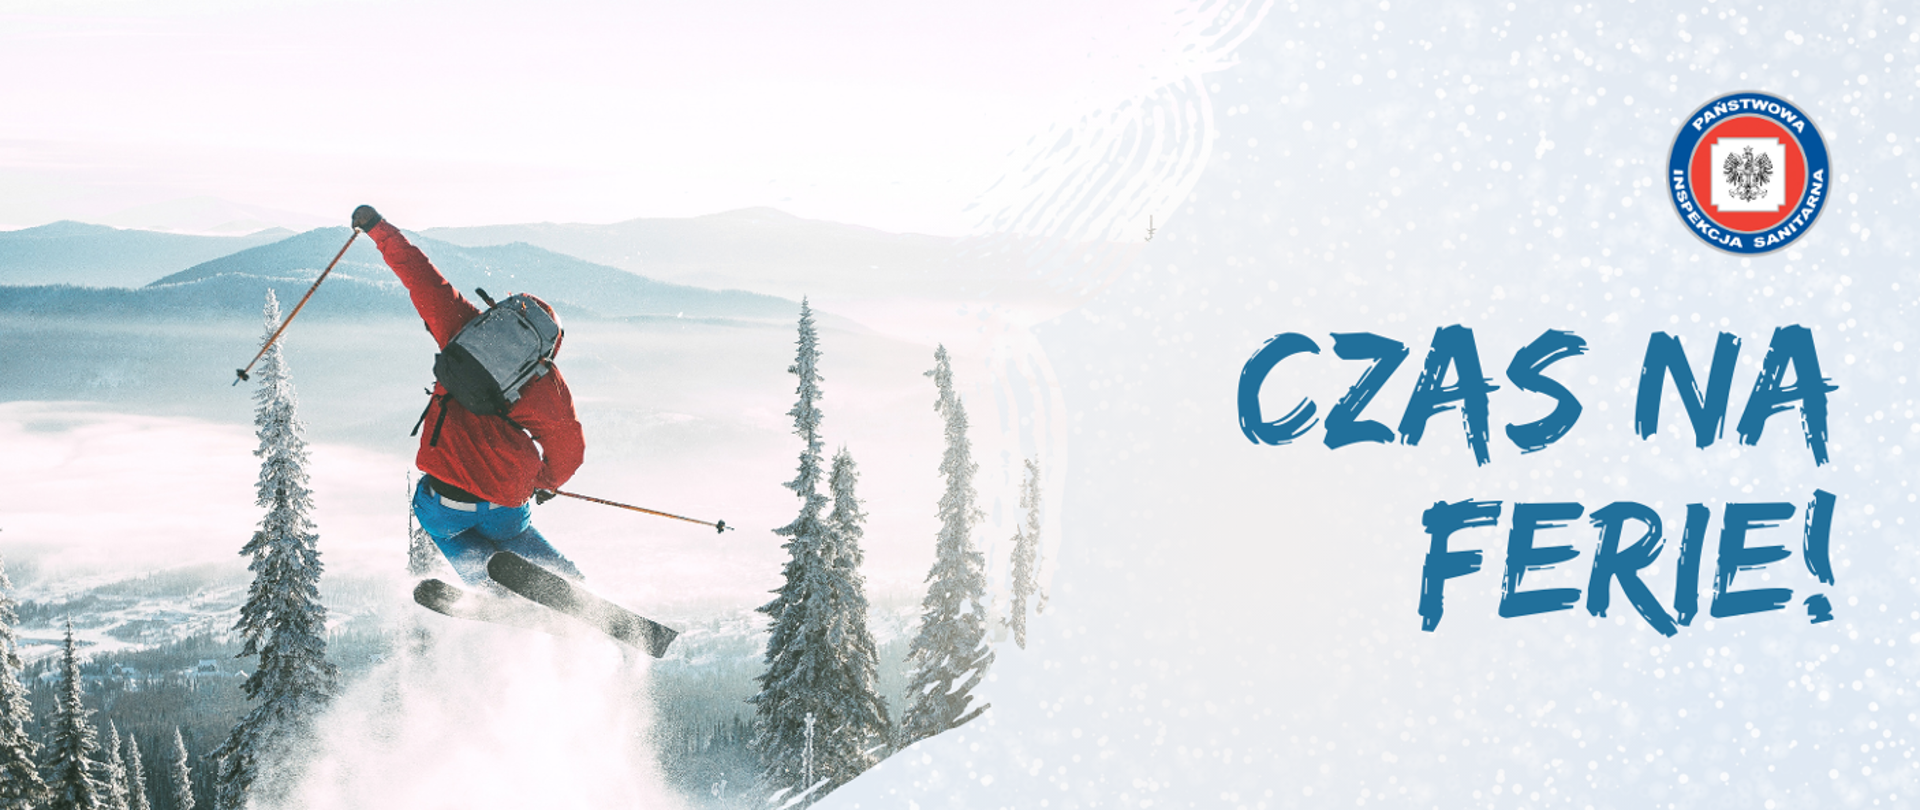 Po lewej stronie obrazu widnieje ubrany w czerwoną kurtkę narciarz, skaczący ze wzniesienia górskiego. Przed nim znajduje się krajobraz lasu. Po prawej stronie znajduje się napis czas na ferie nad którym znajduje się logotyp inspekcji sanitarnej. 